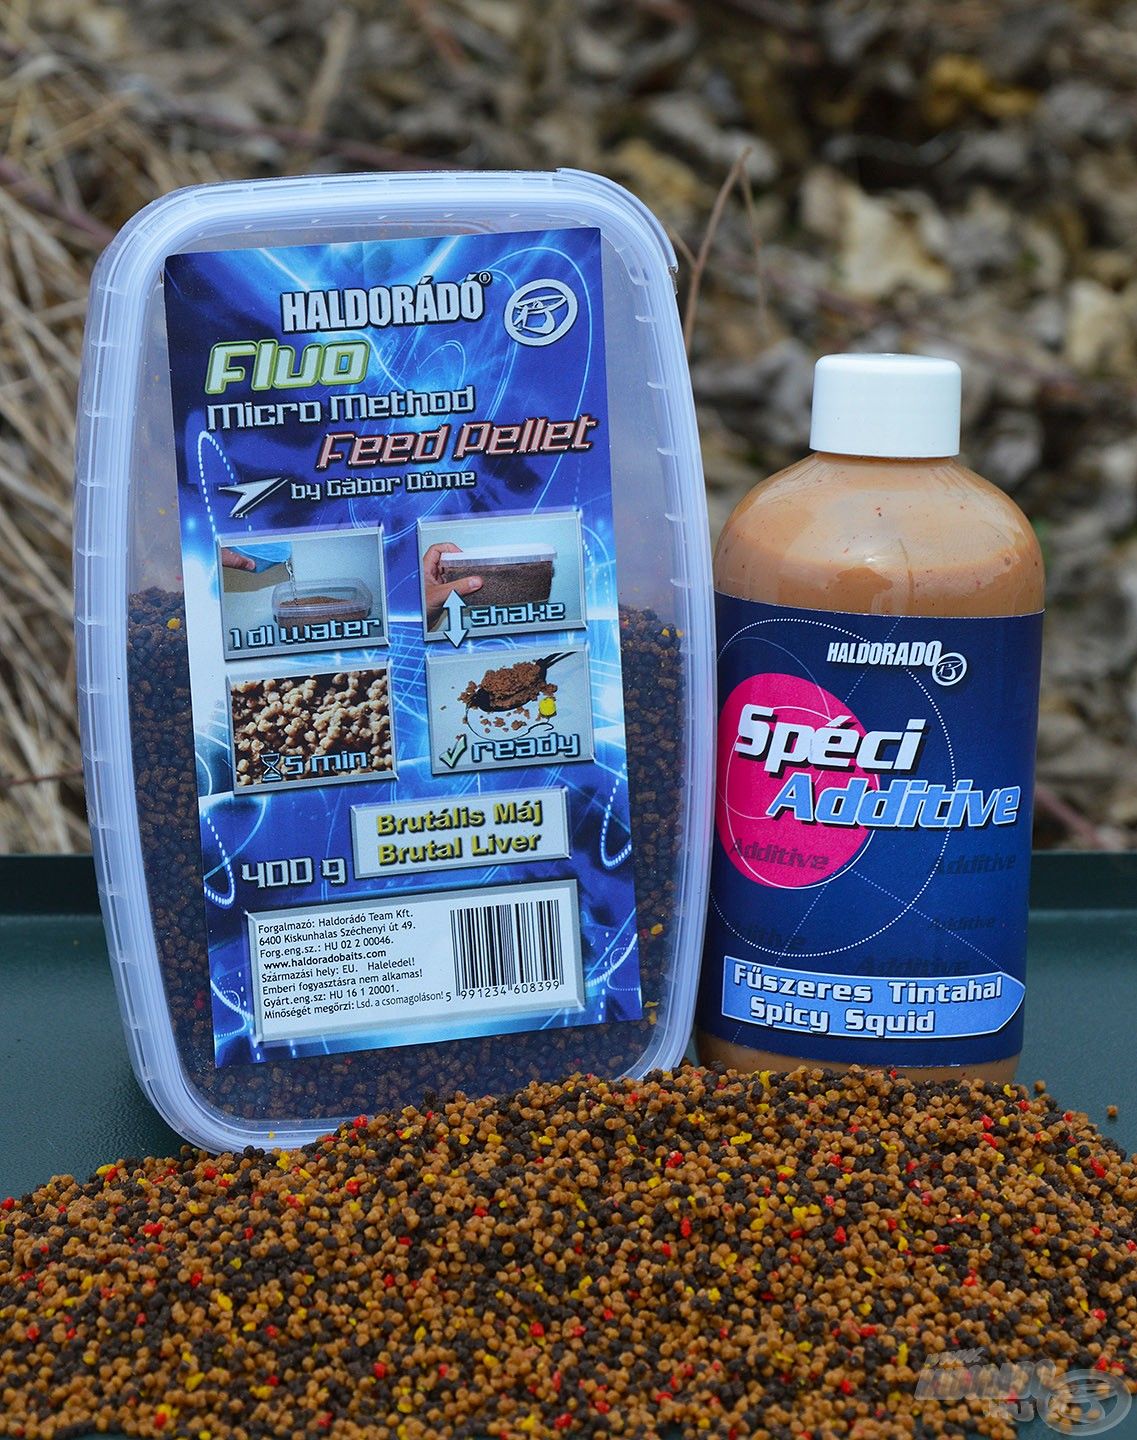 A Brutális Máj Fluo Micro Method Feed Pellet és a Fűszeres Tintahal SpéciAdditive nagyon ütős páros, ami hideg vízben is jól teljesít!